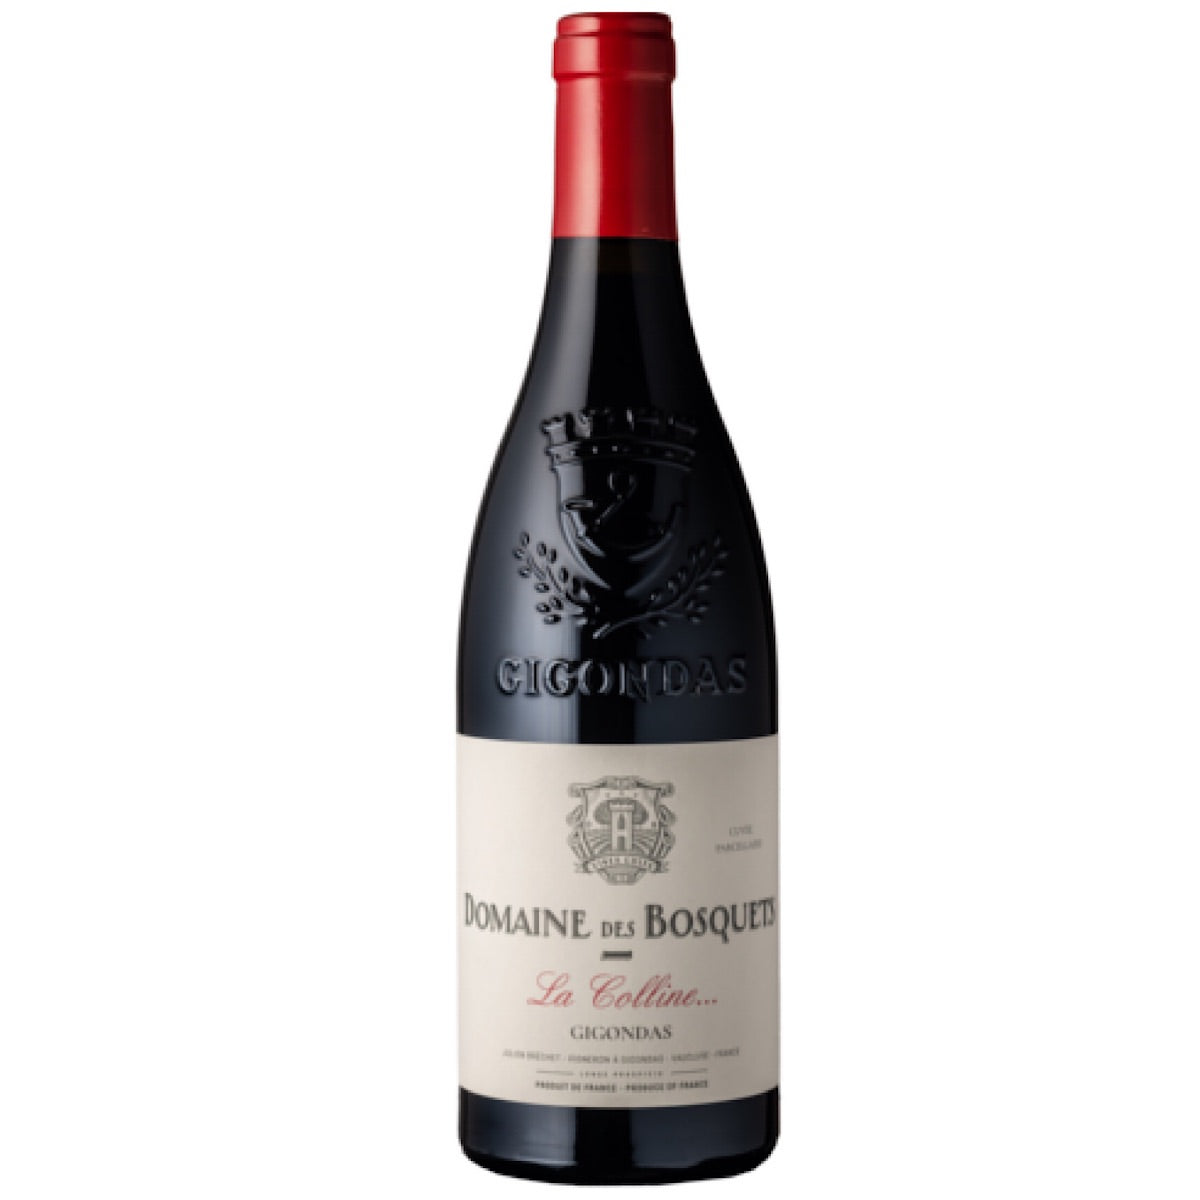 Domaine des Bosquets `La Colline` Gigondas 6 bottle case